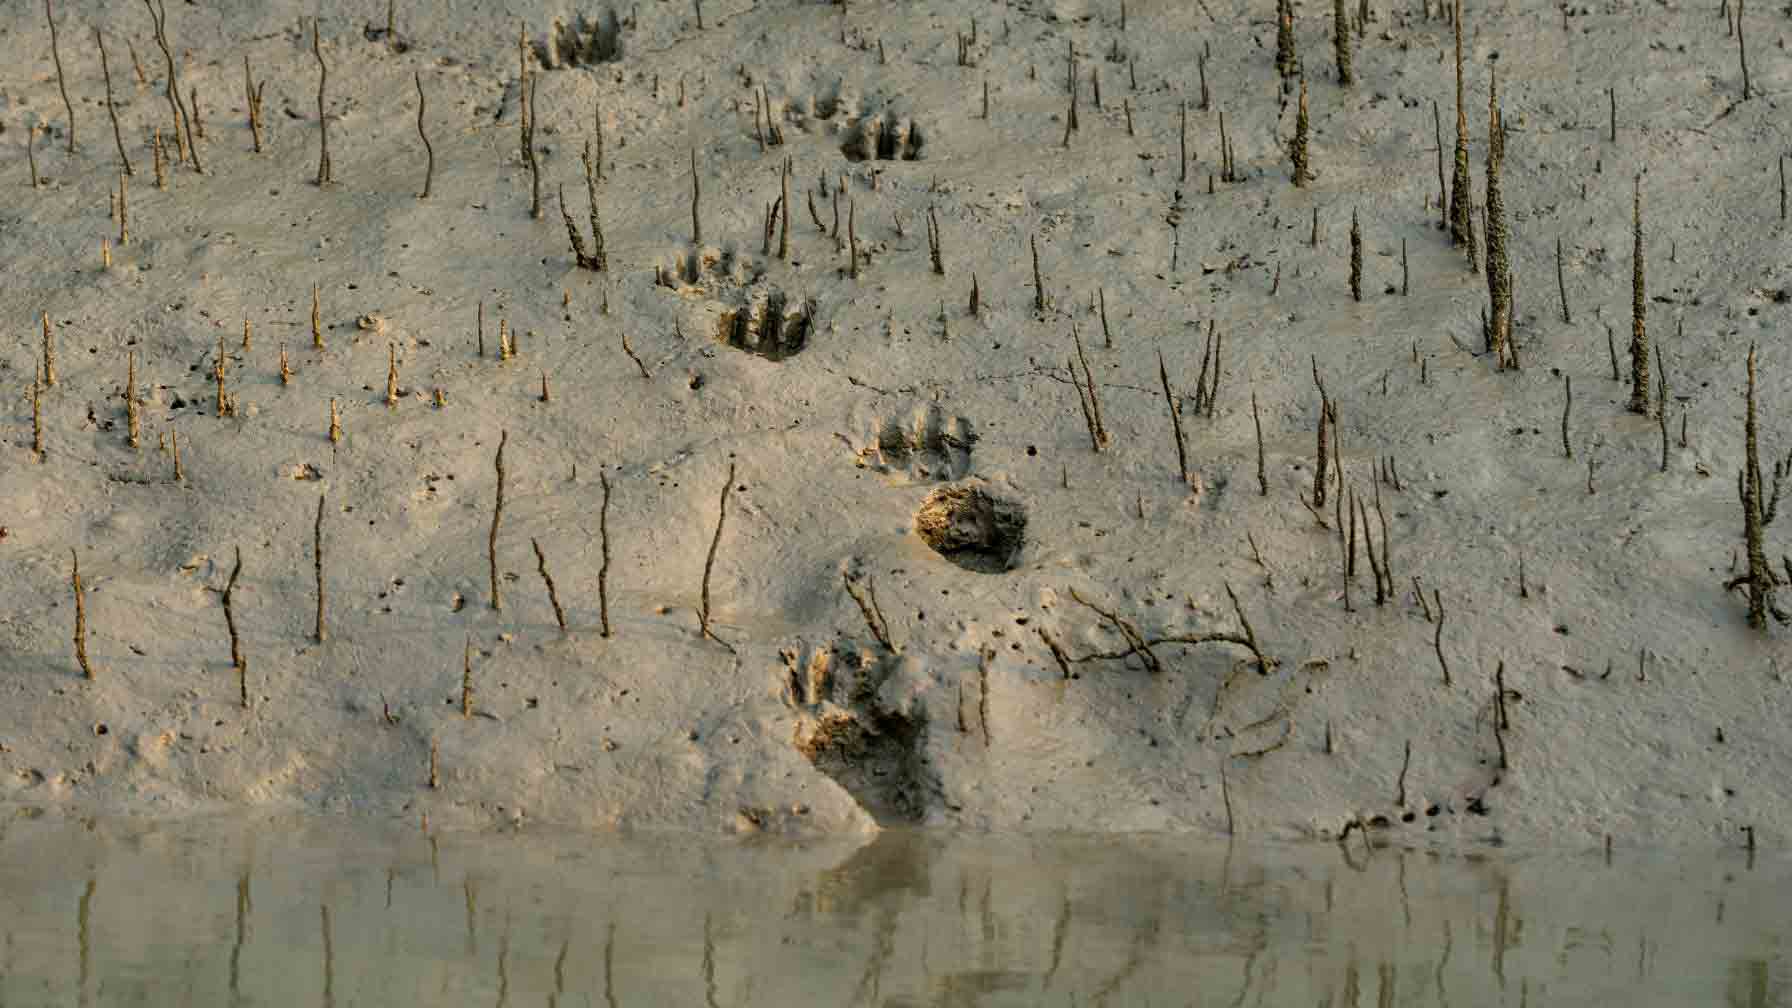 Der Star der Sundarbans ist nämlich der Bengal- oder Königstiger. Nur noch einige Hundert Exemplare leben dort. Nirgendwo sonst auf der Welt findet man übrigens Tiger in Mangrovengebieten. Unser Fotograf Tapash entdeckt bei seiner Recherche frische Spuren der Raubkatze. © Tapash Paul/GIZ